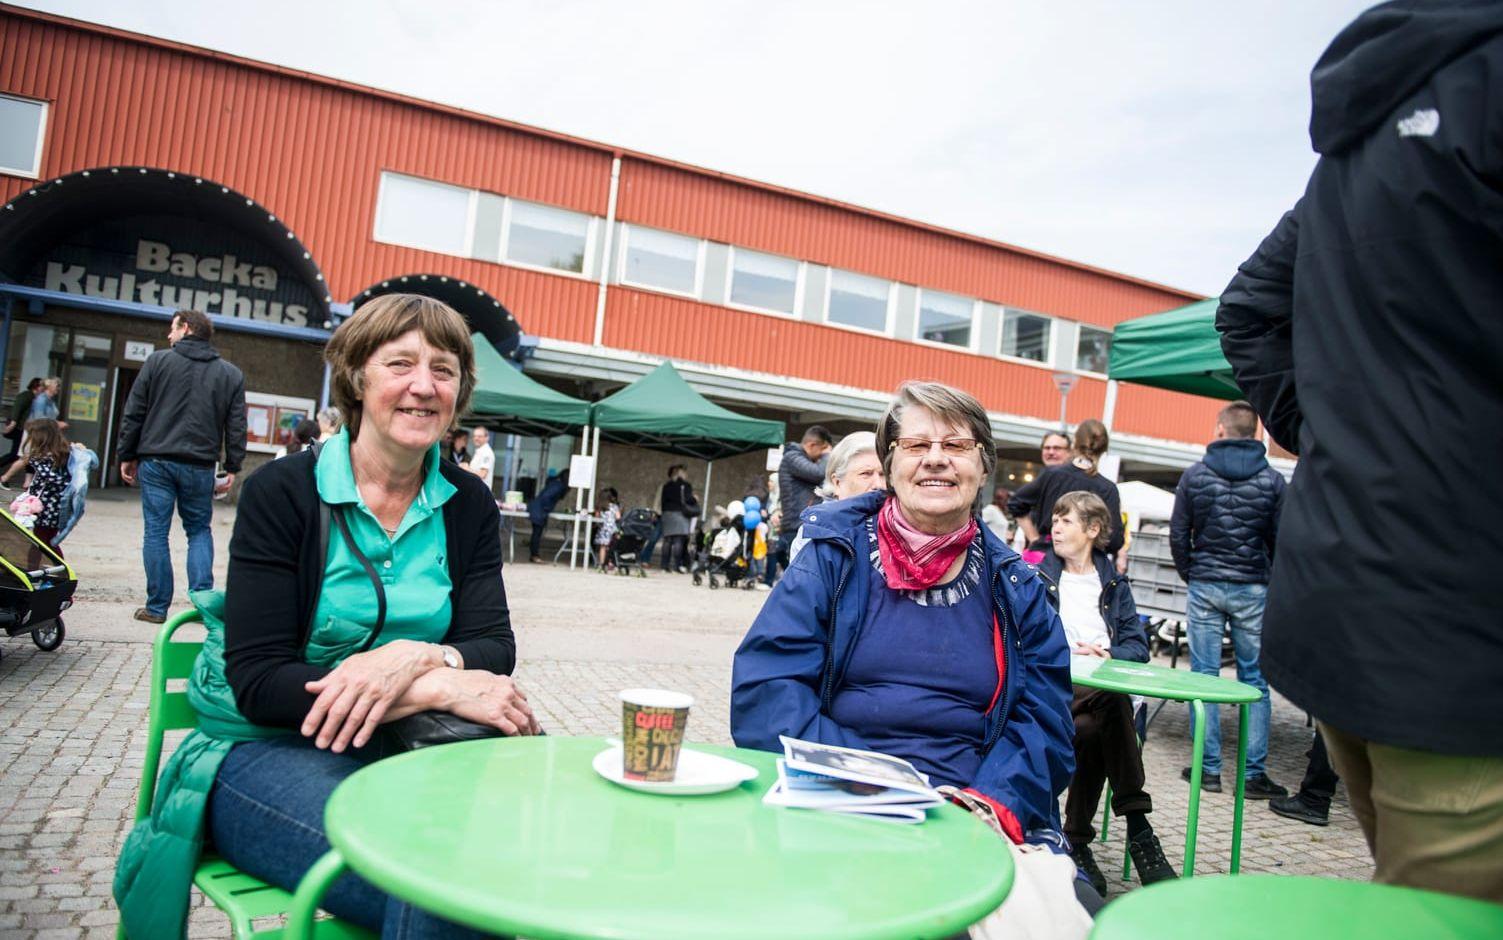 Annicka Ohlsson och Gunnel Henriksson konstaterar att det var mer liv kring torget förr. De hoppas att det kommer tillbaka. Bild: Anna Svanberg